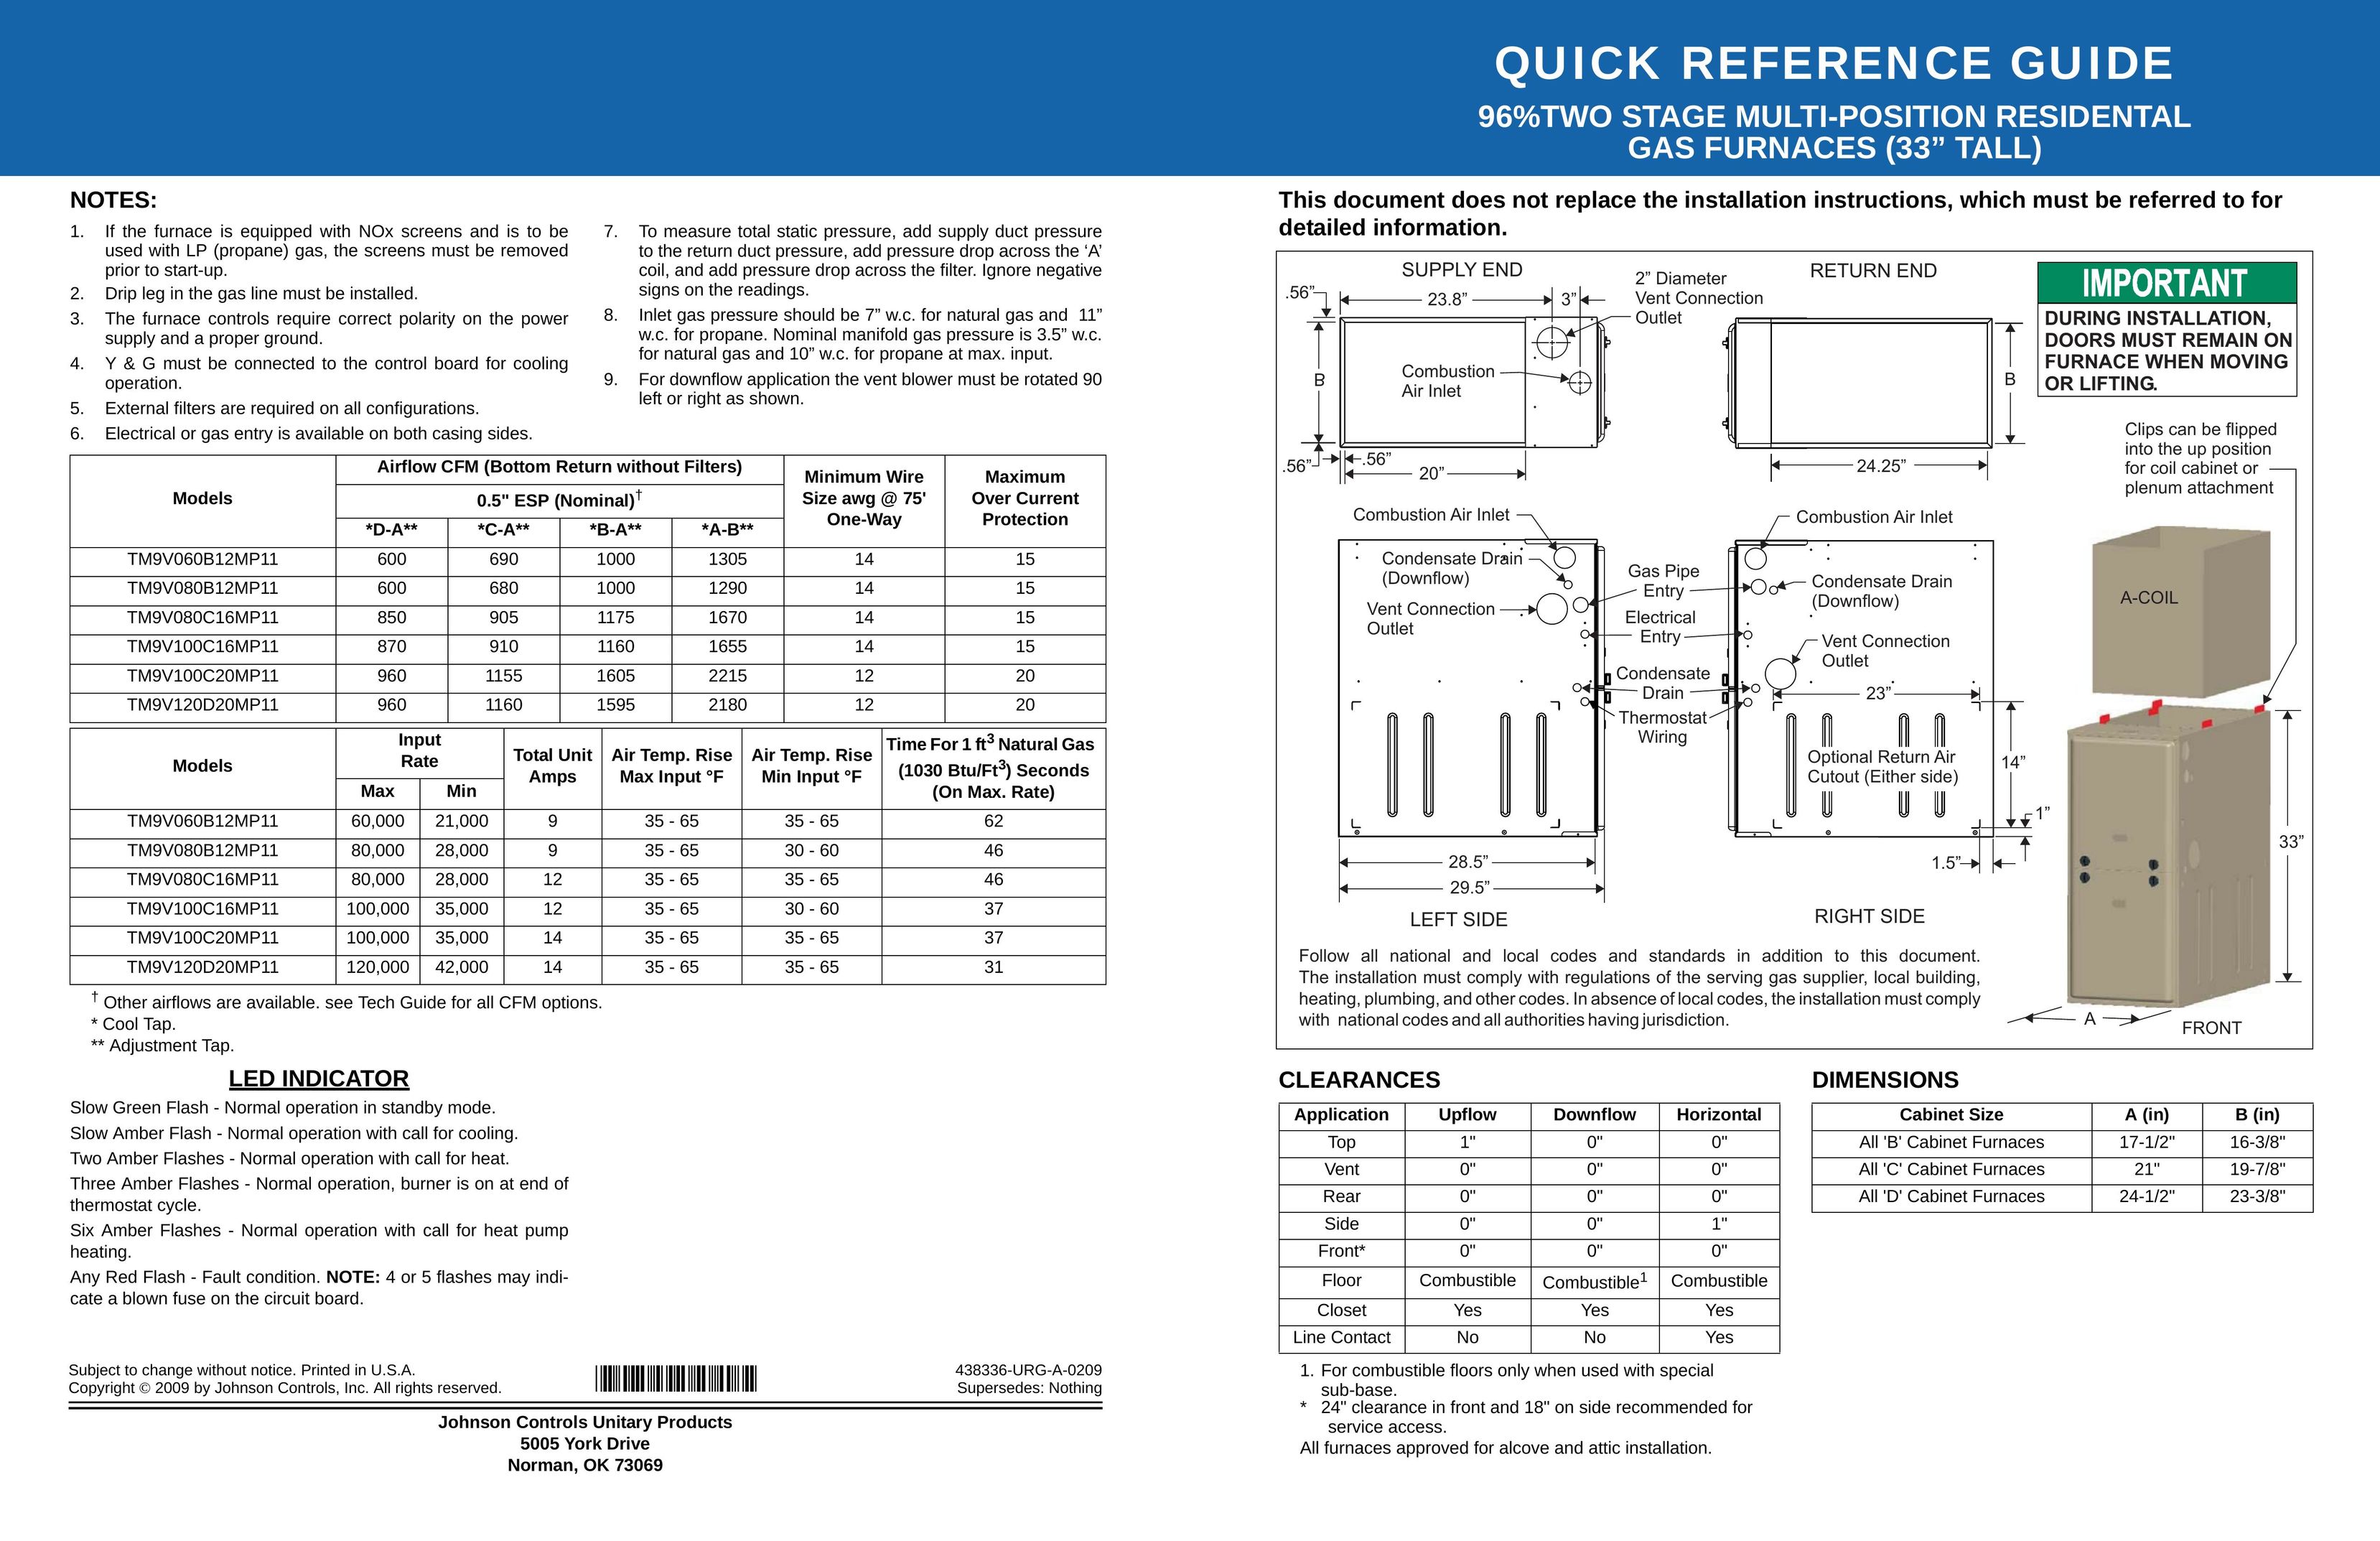 Johnson Controls TM9V120D20MP11 Furnace User Manual